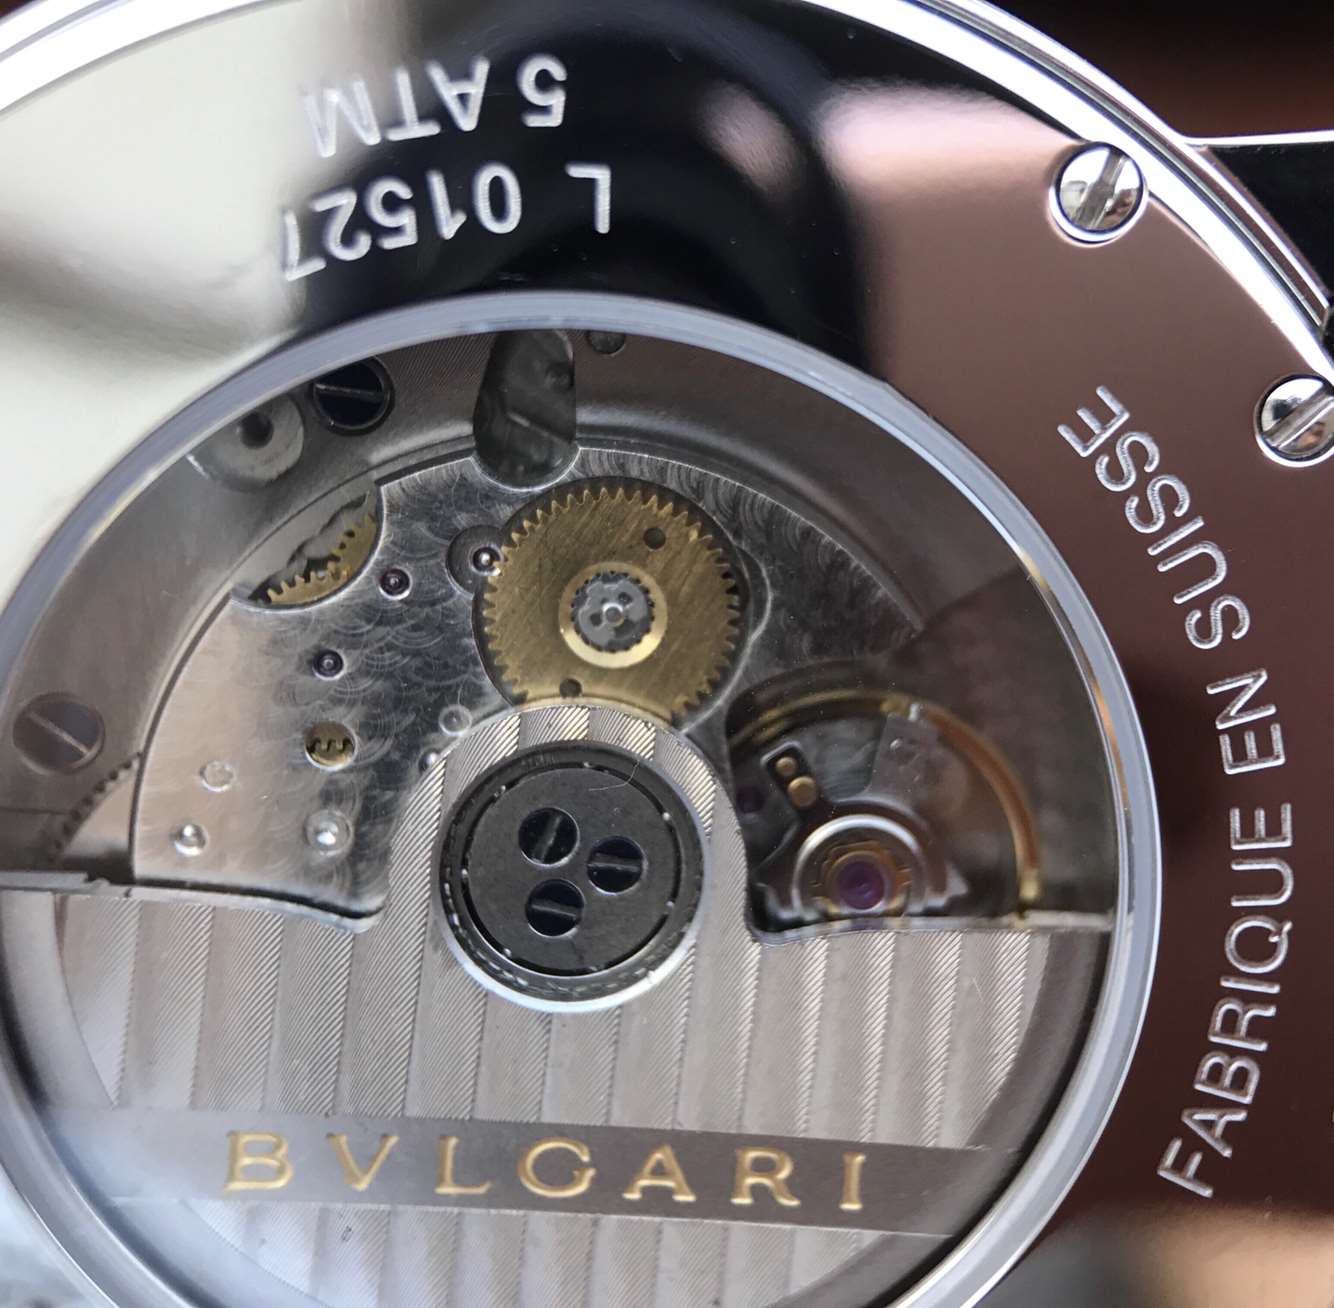 2023021909070090 - 寶格麗高仿手錶哪個廠做的 TW廠寶格麗BVLGARI BVLGARI SOLOTEMPO繫列102056中性腕錶￥2680